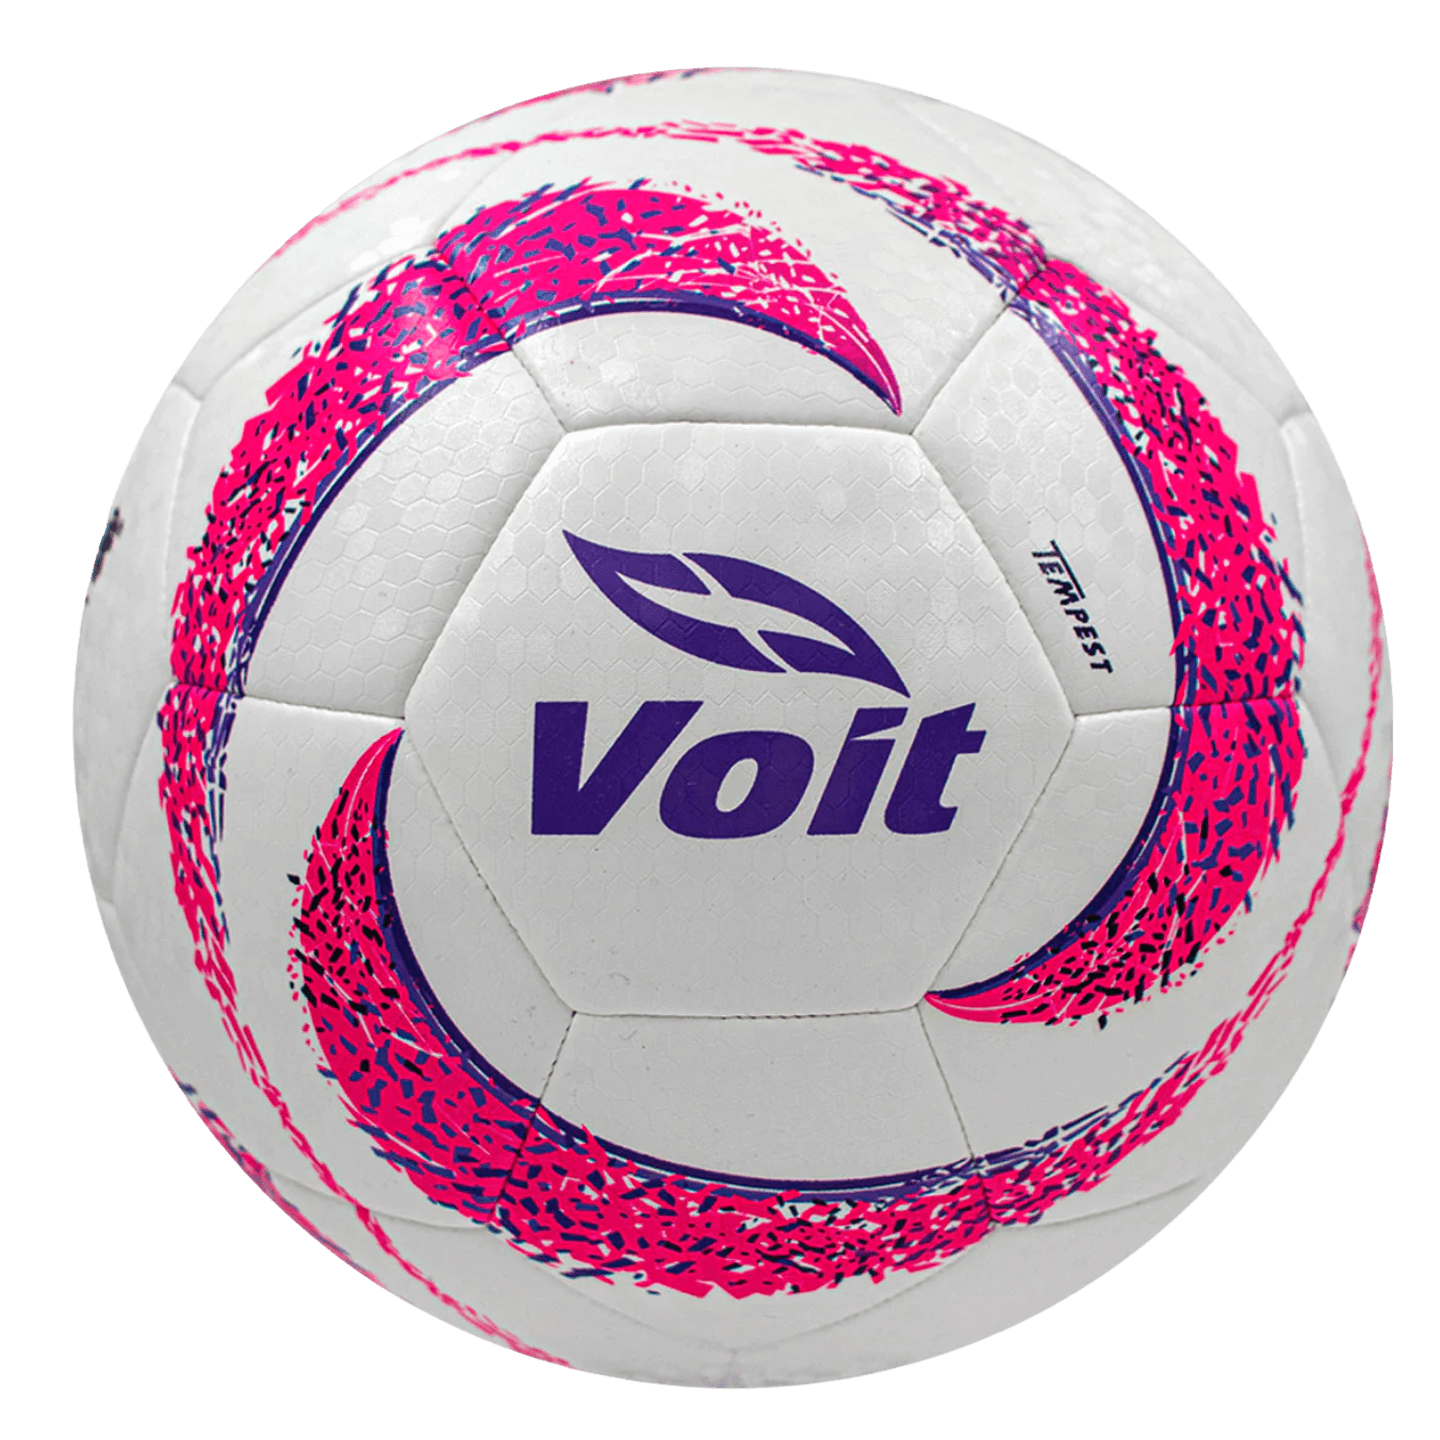 Si può, Pallone da calcio Voit Tempest Pink Apertura 23 Hybrid Training Replica